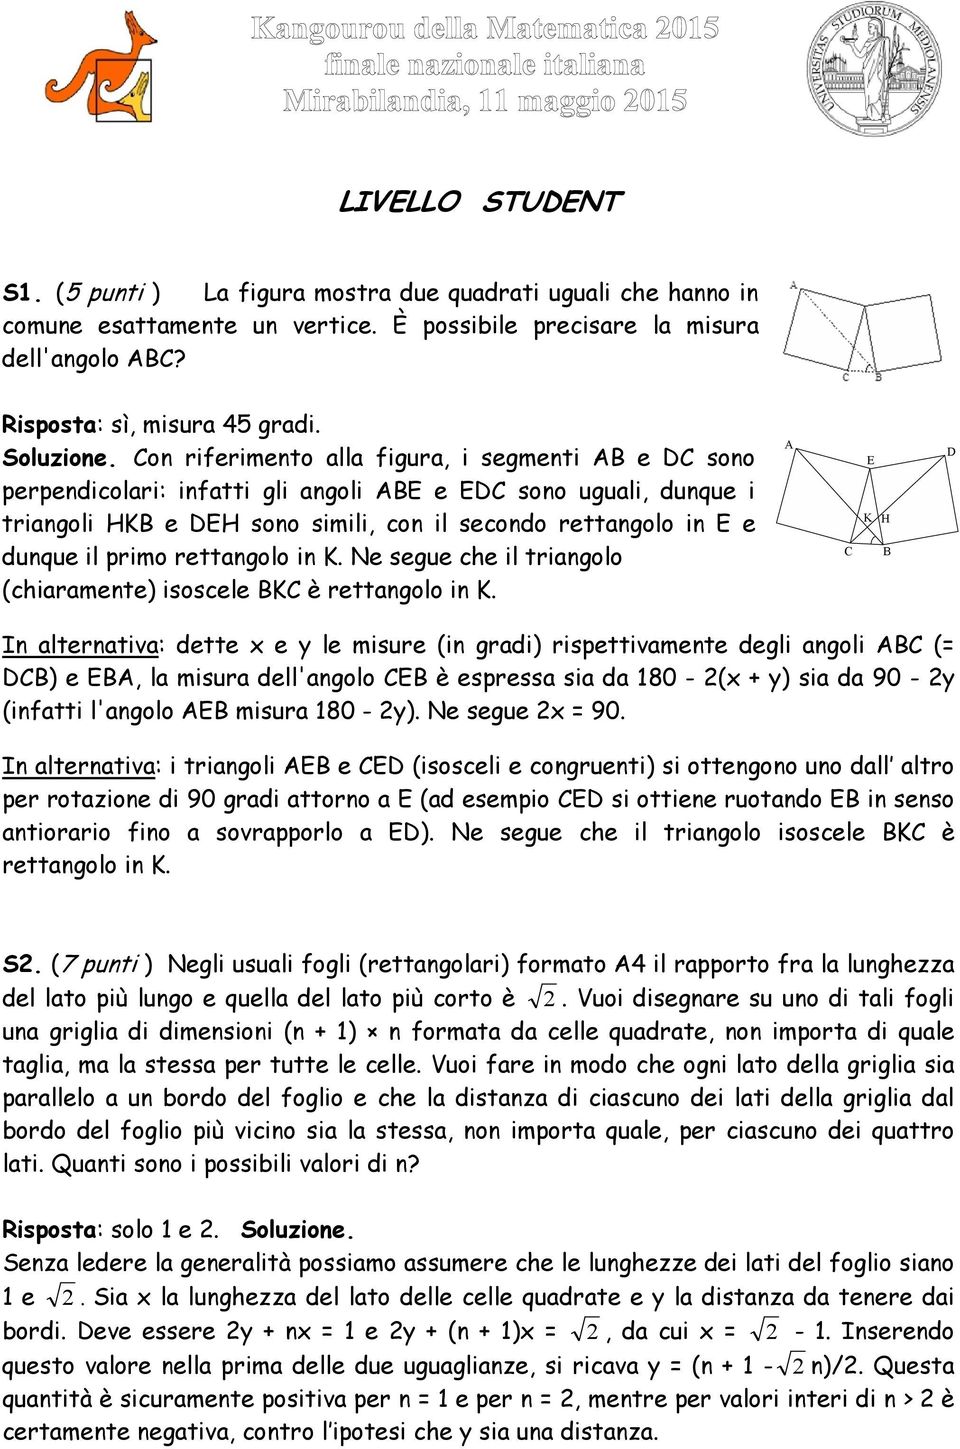 Con riferimento alla figura, i segmenti AB e DC sono perpendicolari: infatti gli angoli ABE e EDC sono uguali, dunque i triangoli HKB e DEH sono simili, con il secondo rettangolo in E e dunque il